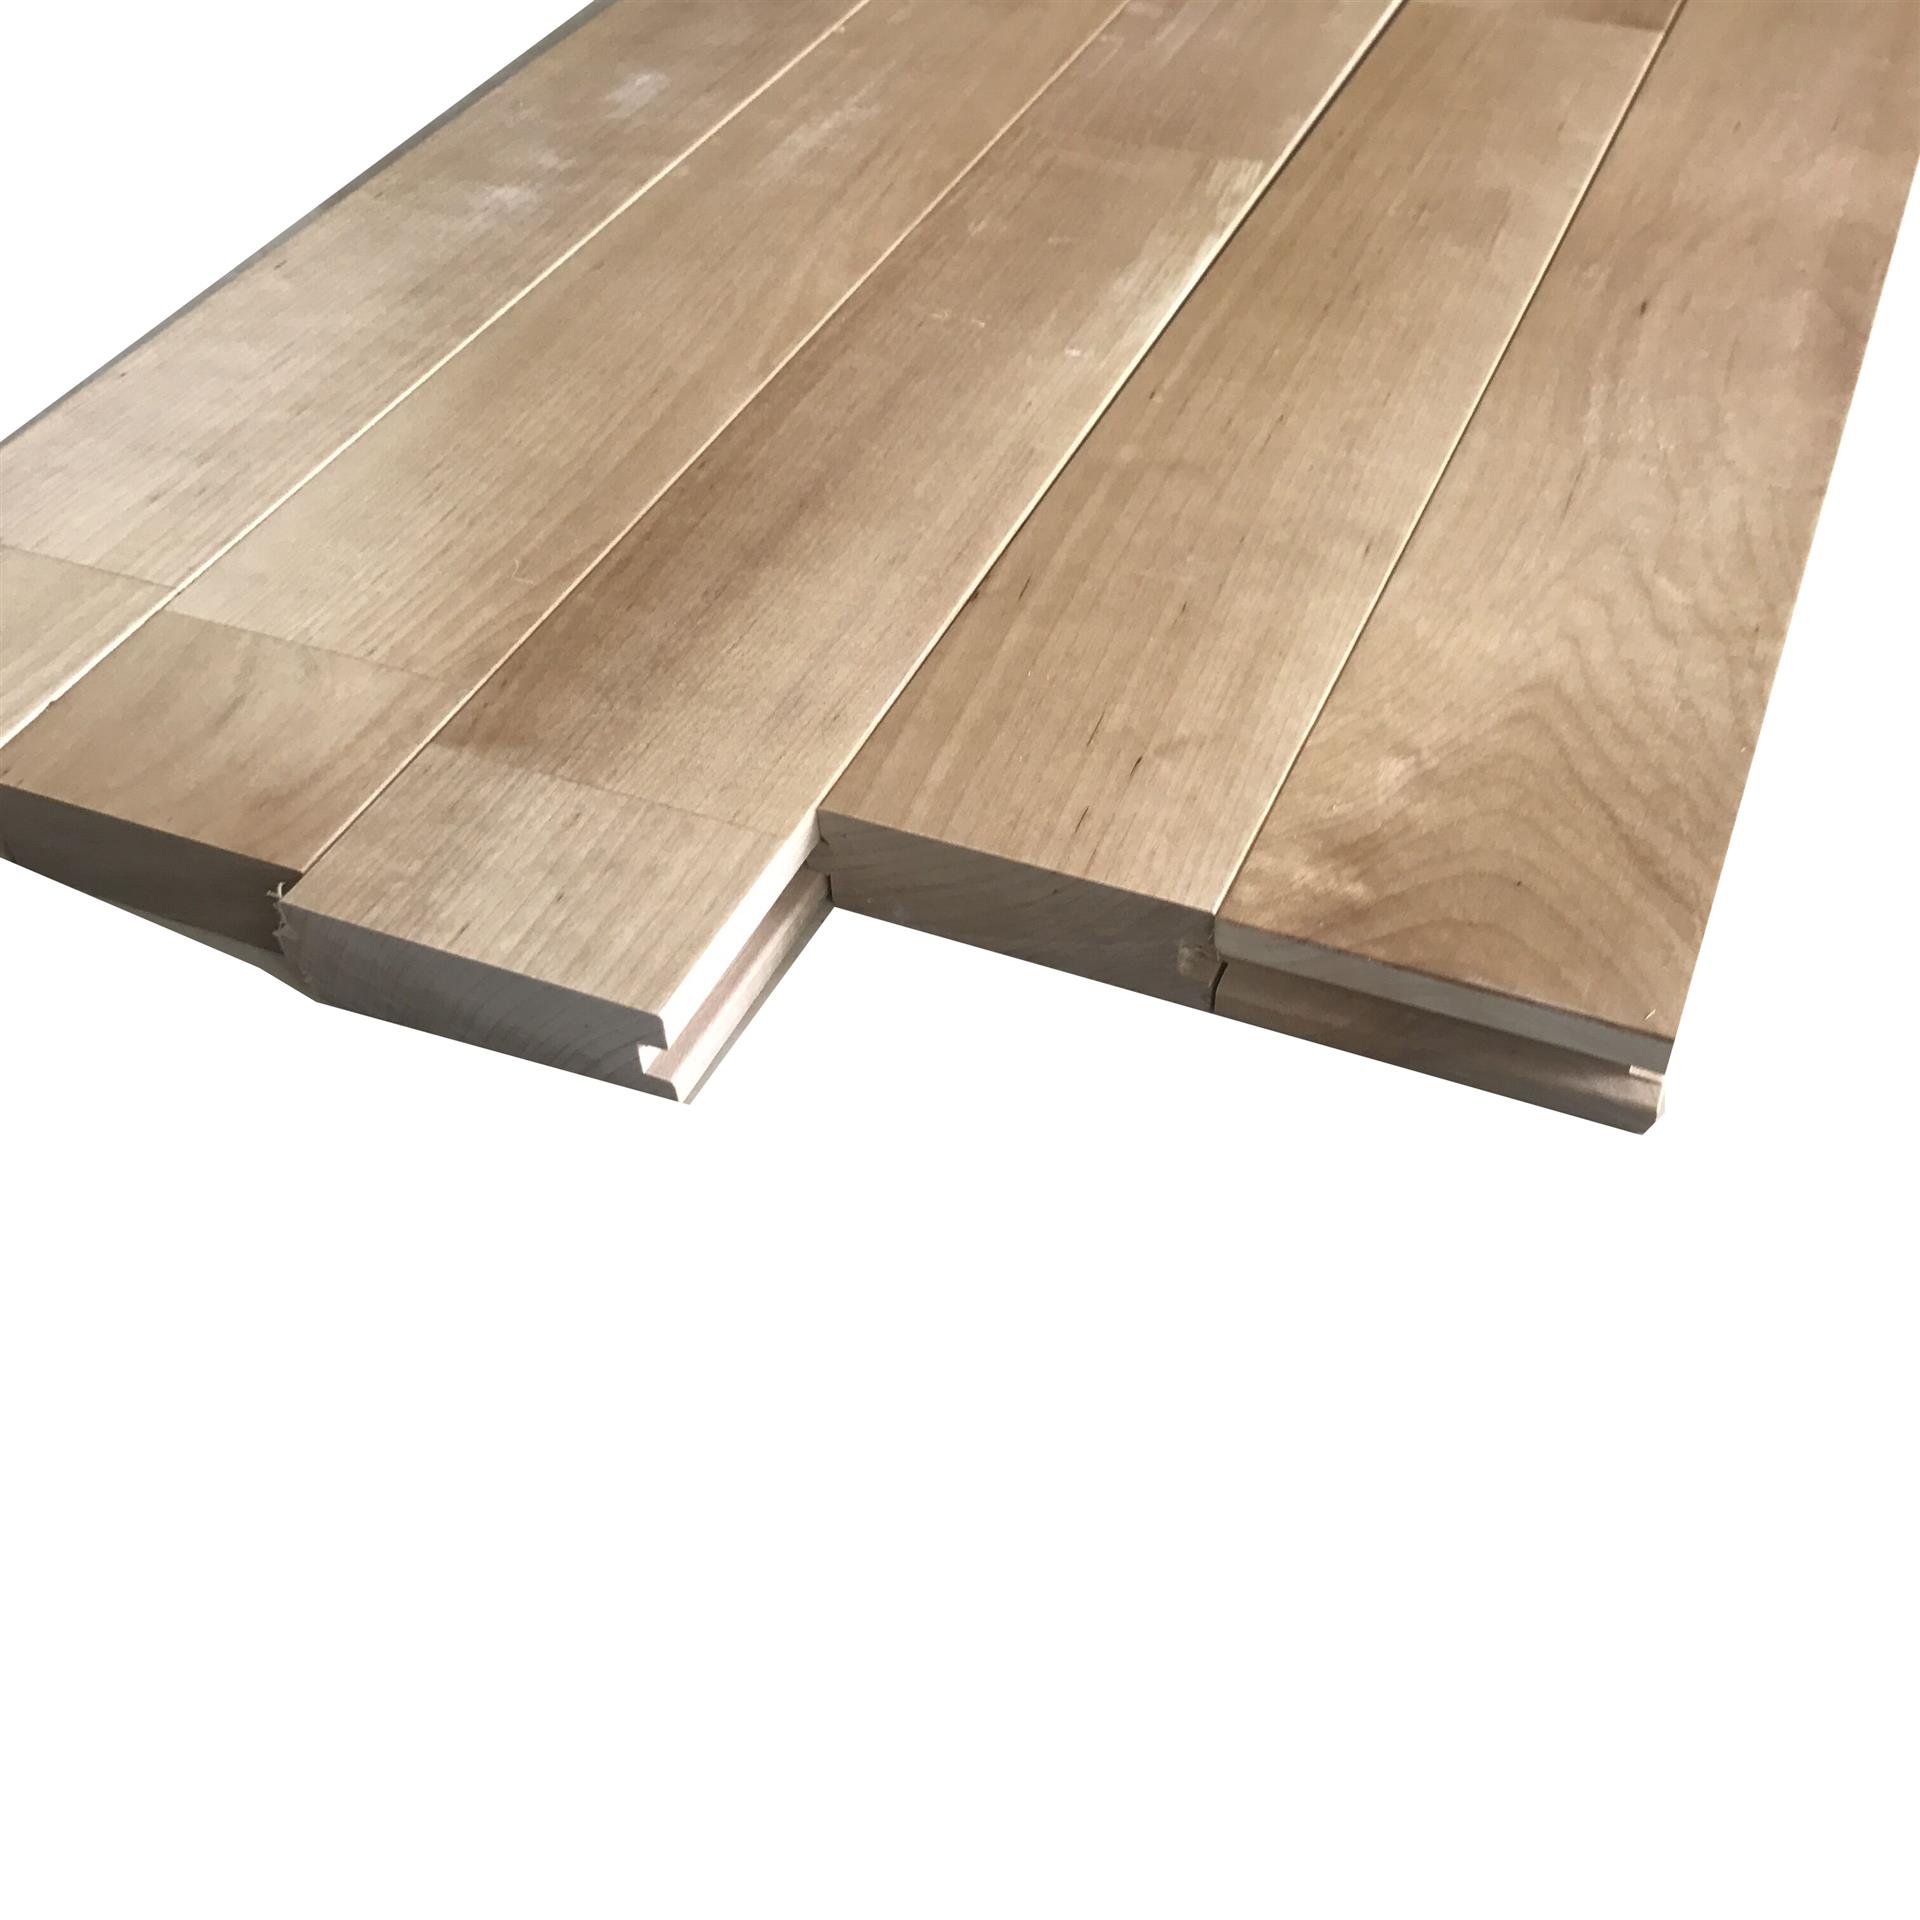 悬浮式安装是体育运动木地板专属的铺设方式